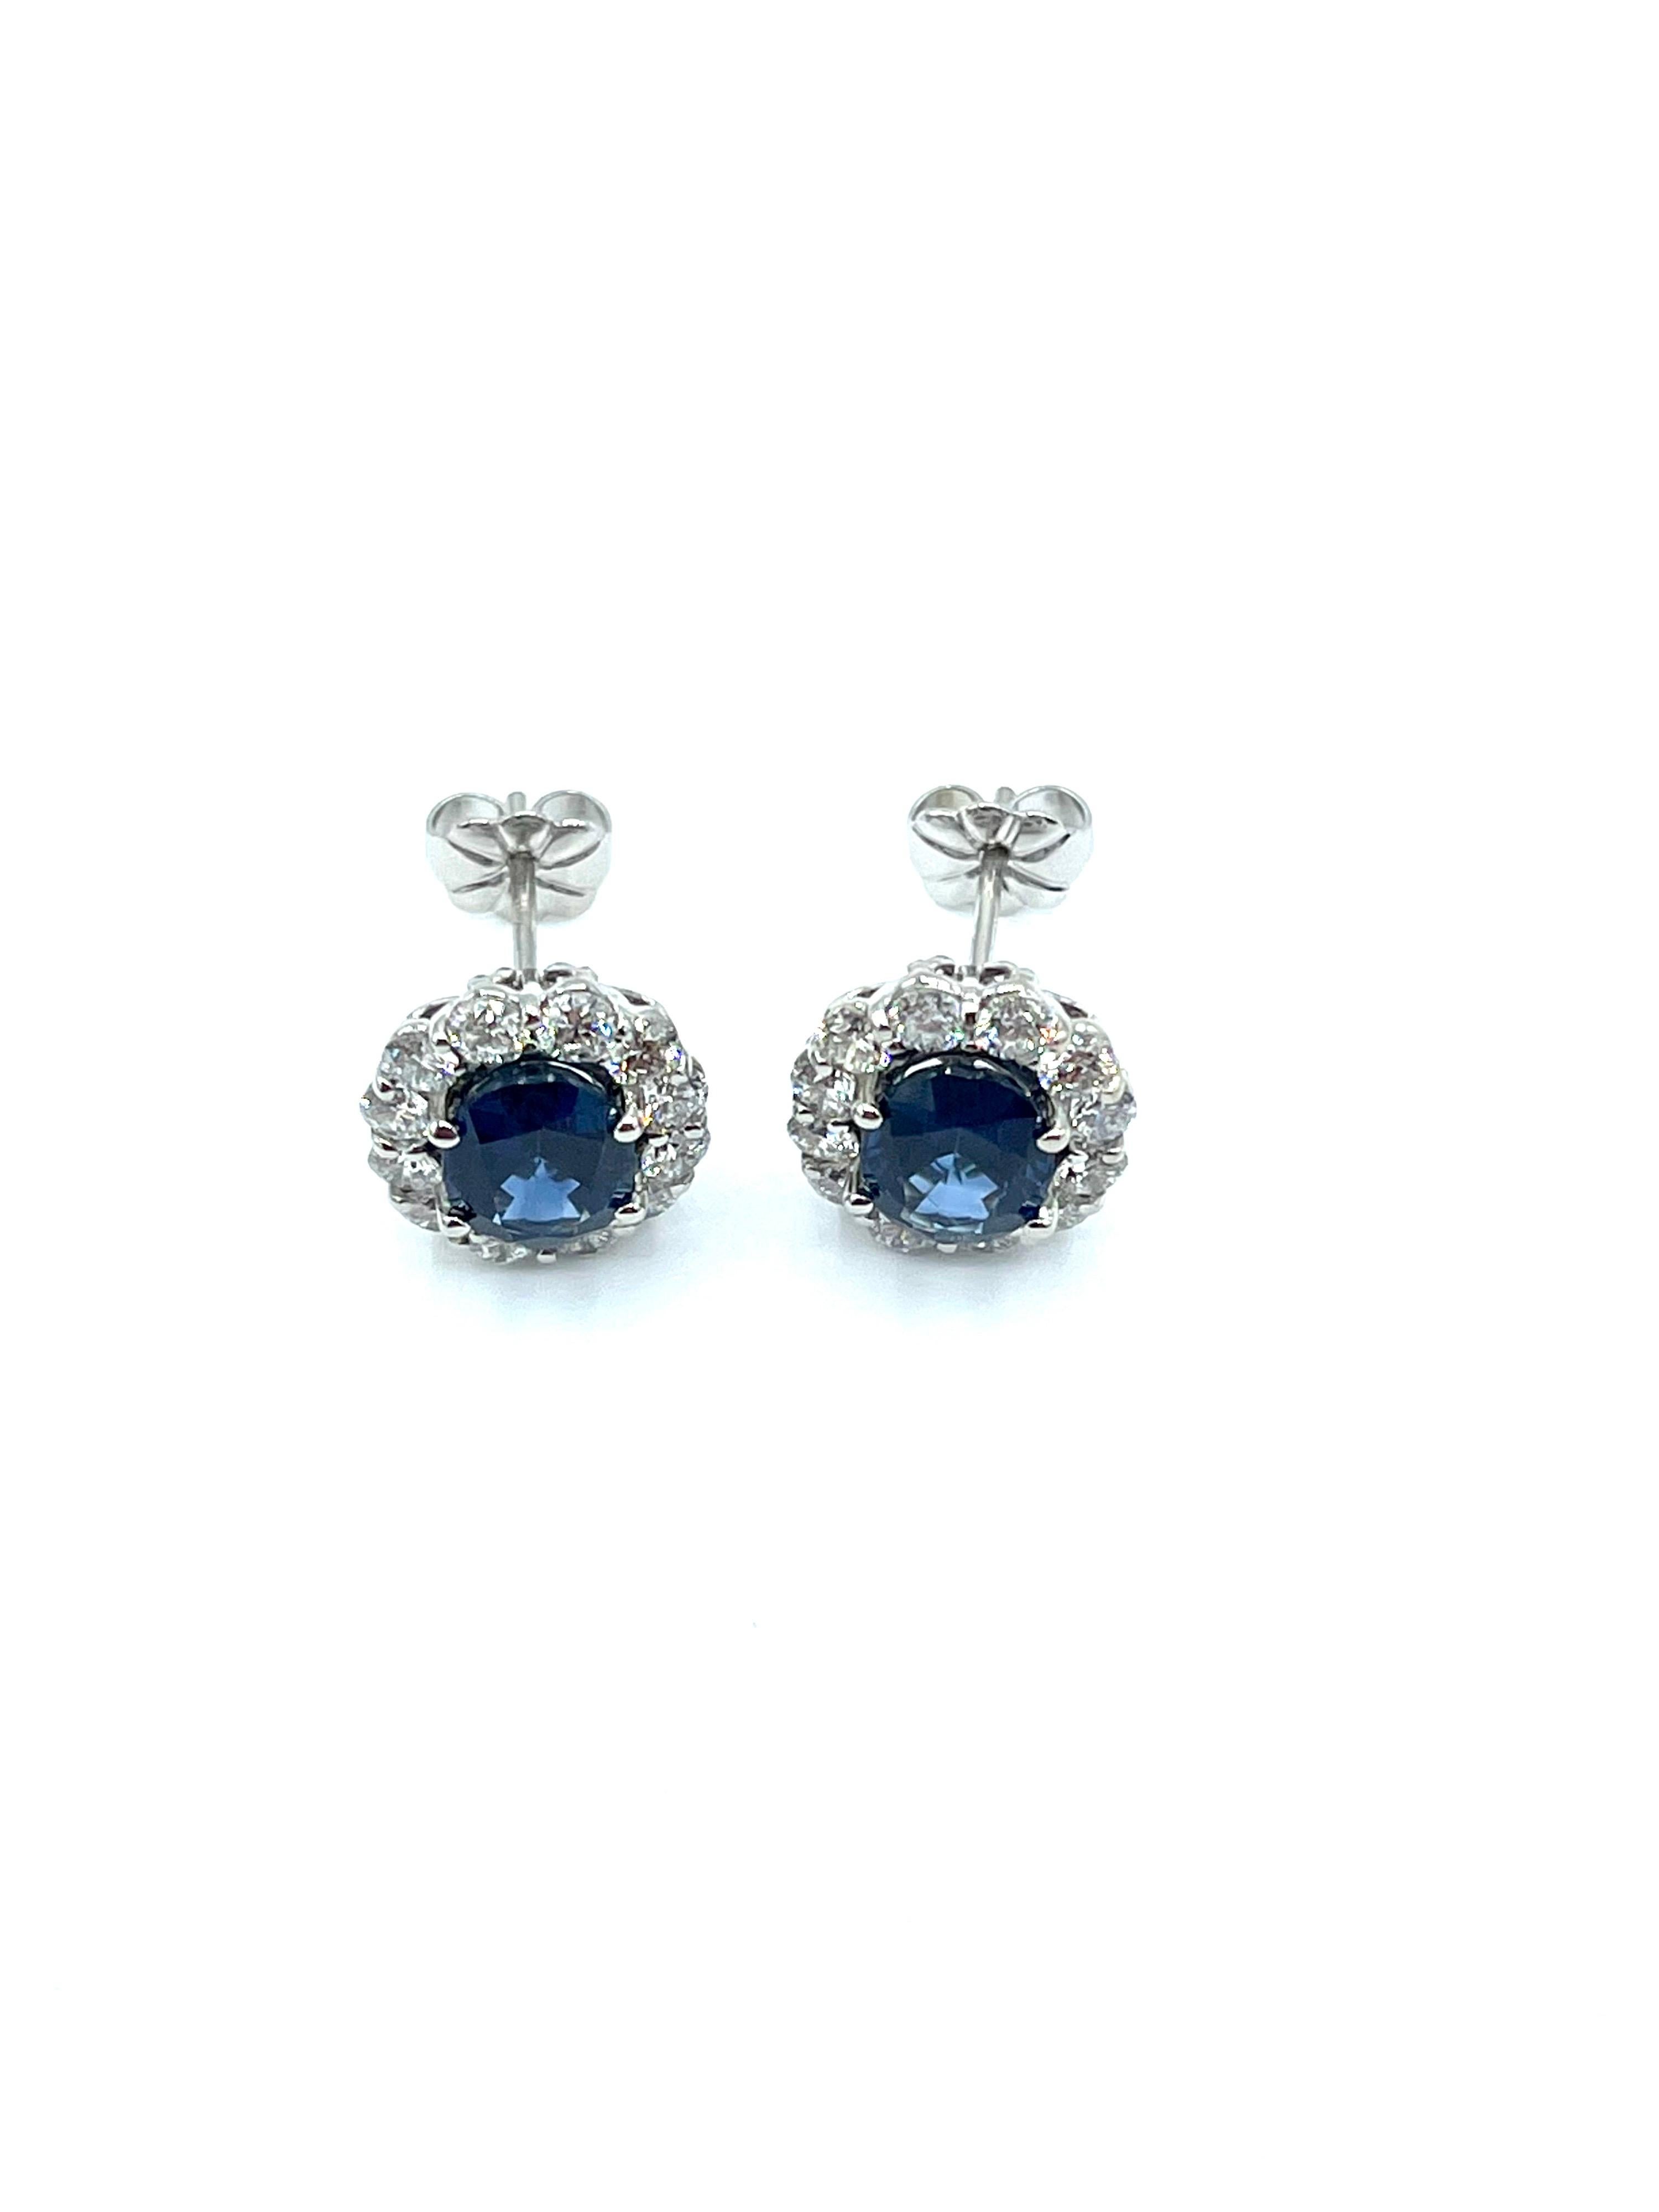 Ein wunderschönes Paar Ohrringe aus blauem Saphir und Diamant!  Die beiden ovalen Saphire sind in vier Zacken gefasst, umgeben von einer einzigen Reihe runder Diamanten im Brillantschliff, auf einem mittig montierten Pfosten.  Die beiden Saphire